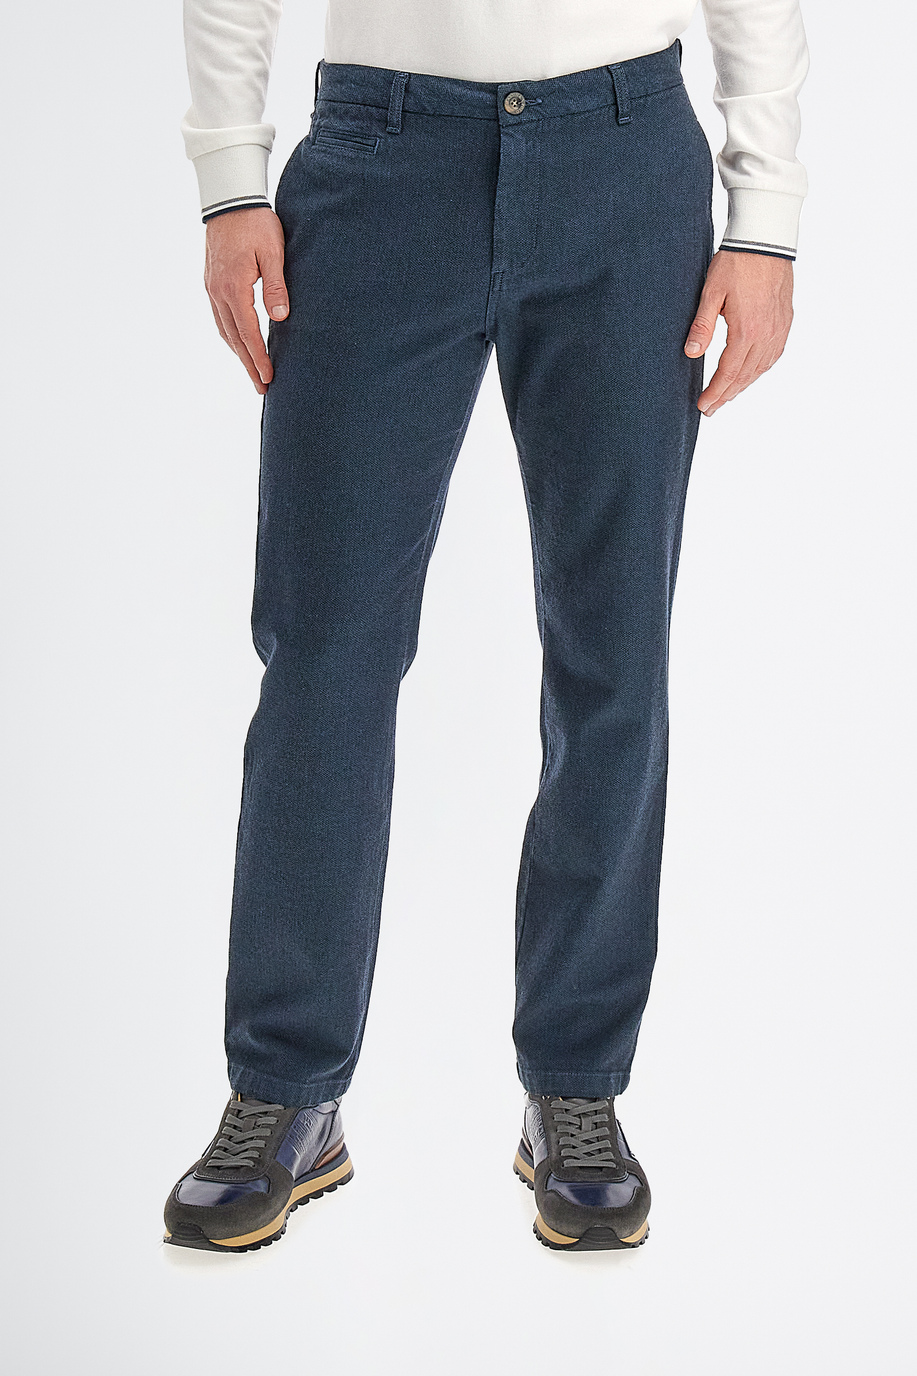 Men’s trousers 5 pockets regular fit cotton - Trousers | La Martina - Official Online Shop